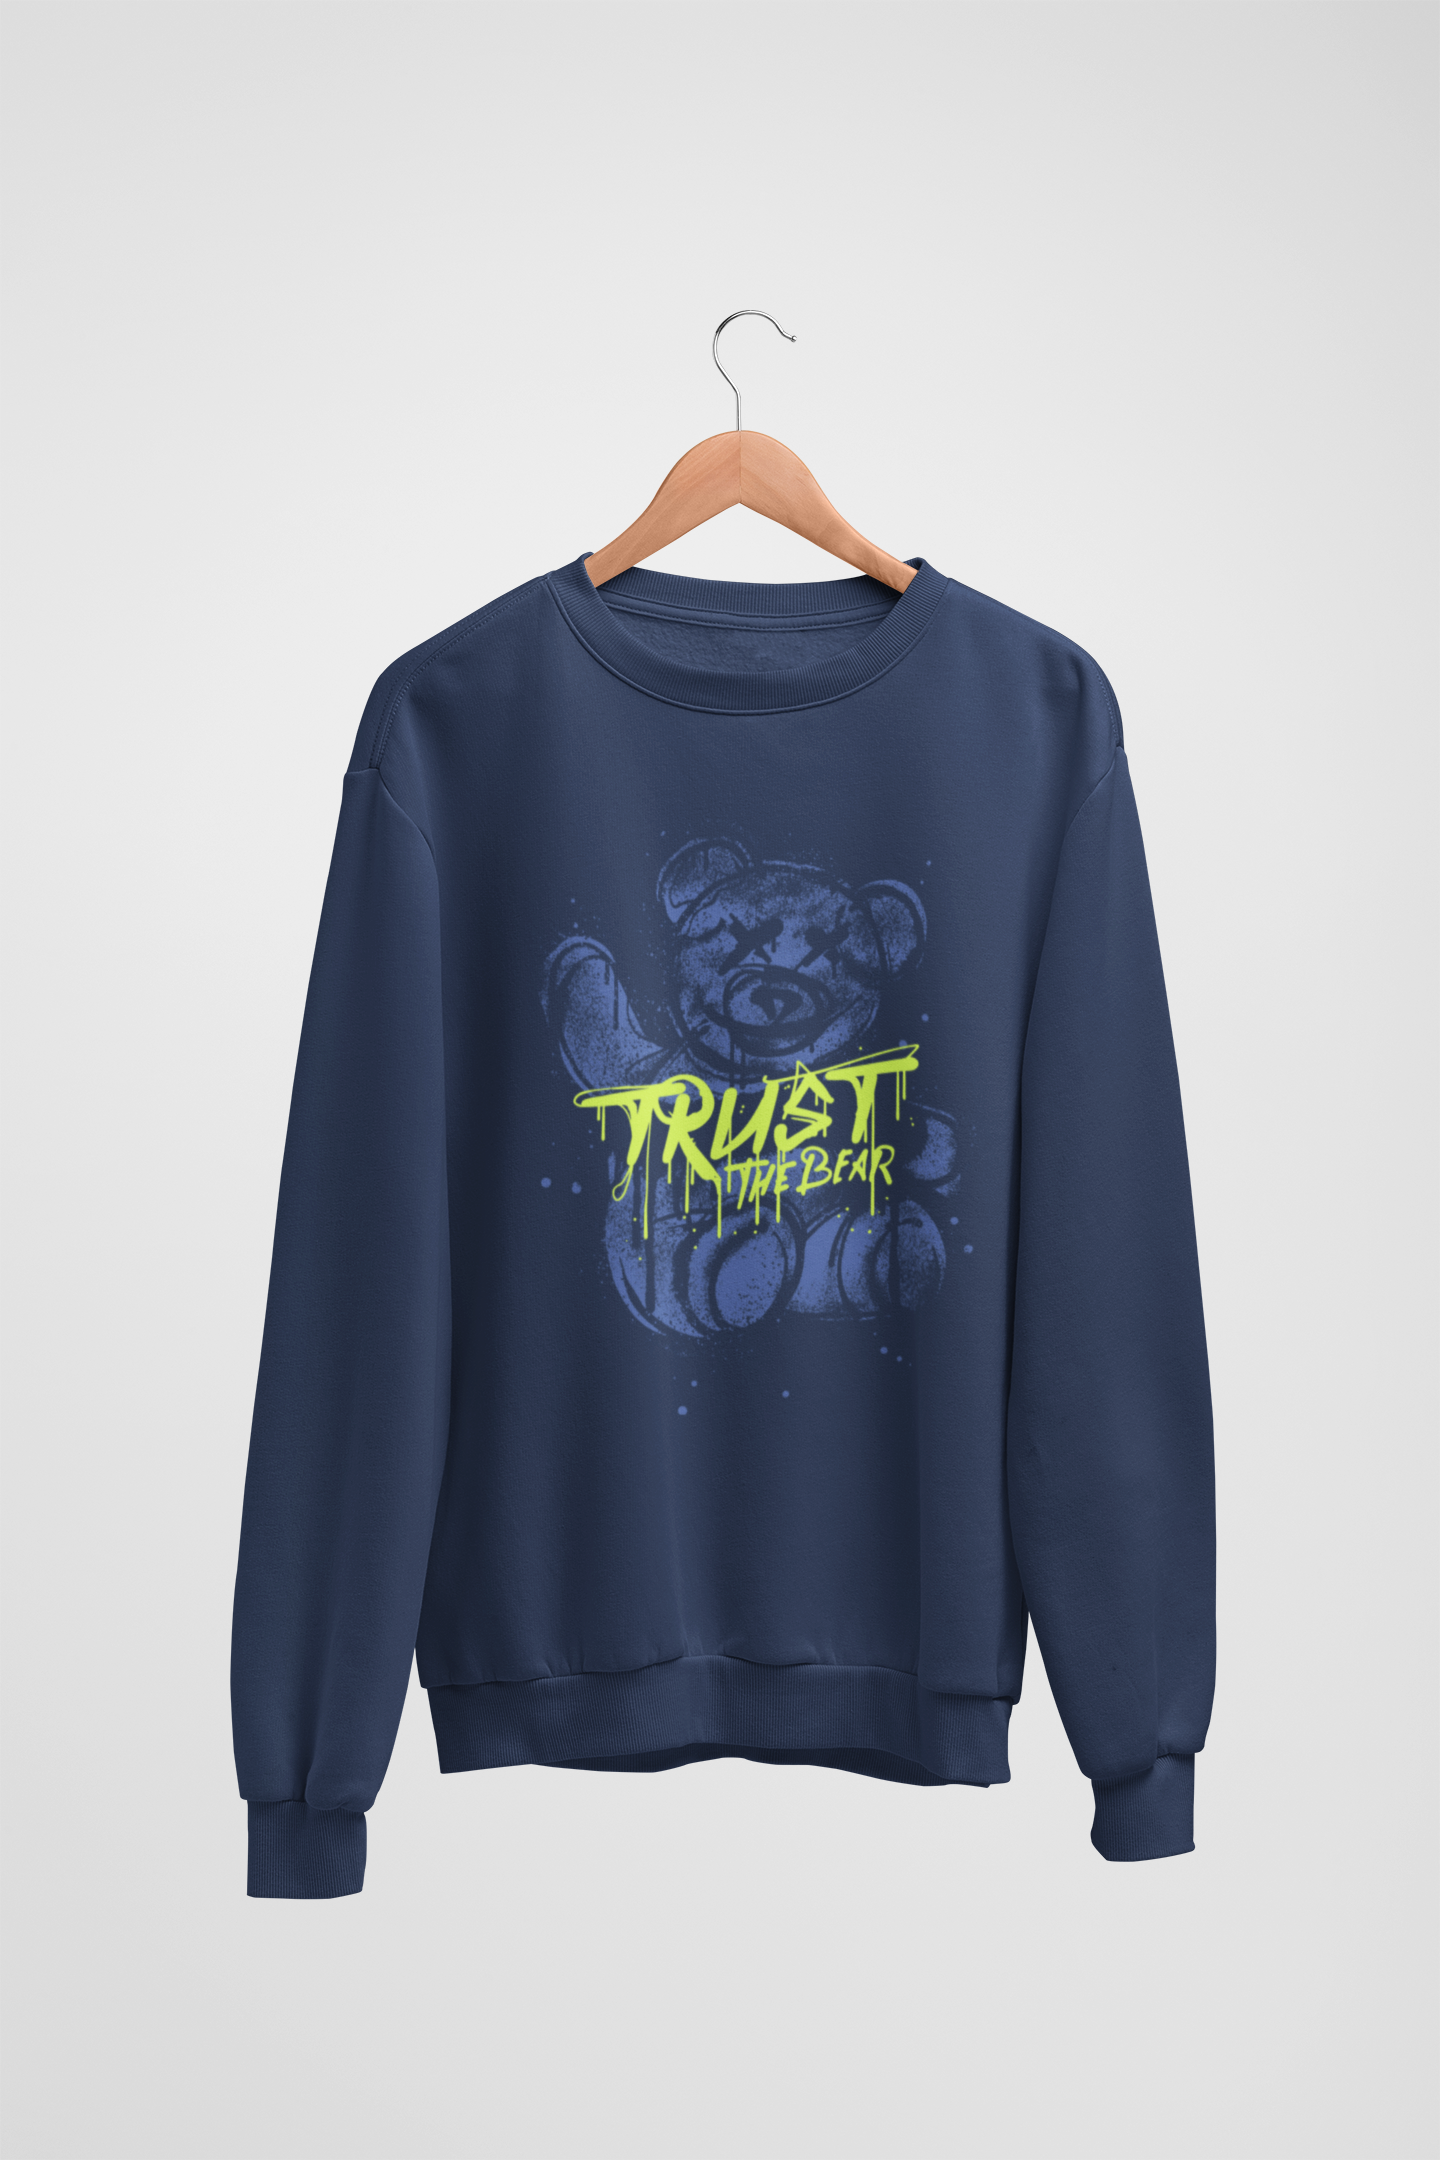 Trust The Bear Navy Blue Sweatshirt For Women